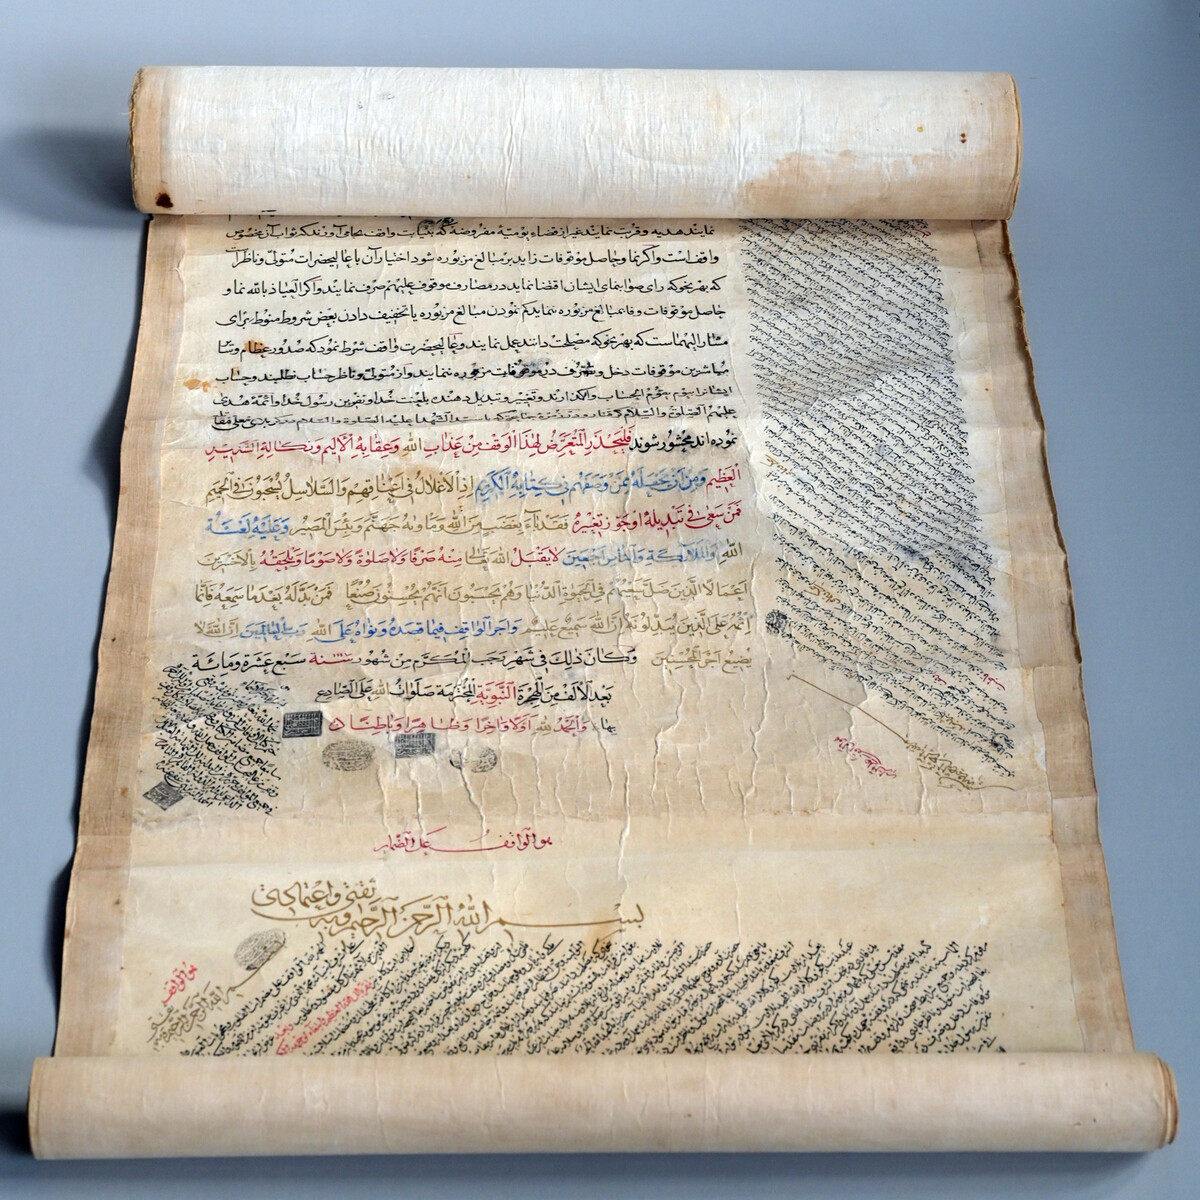 Ein undatiertes Waqf-Dokument (Stiftungsurkunde) aus dem 18. Jahrhundert in Form einer Rolle aus Maschhad. Hs. or. 14671 